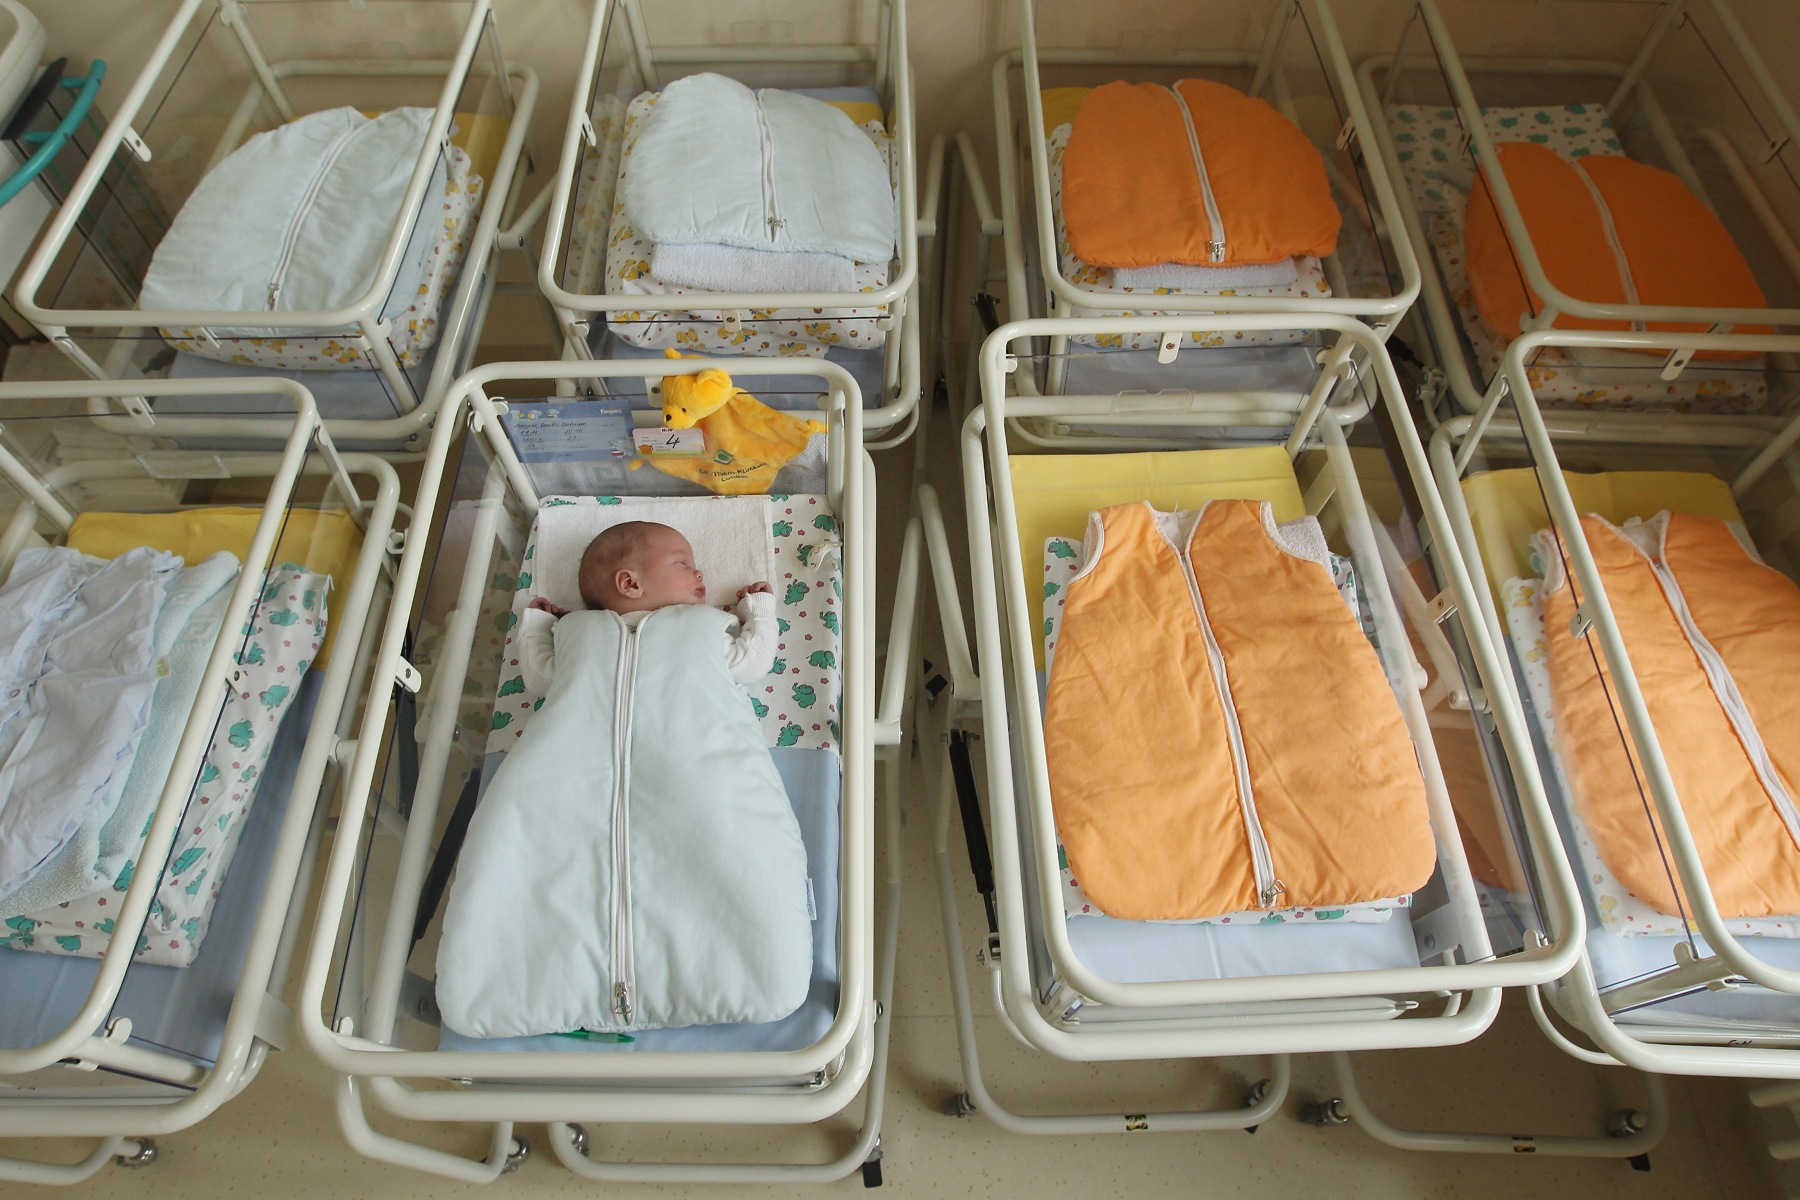 ΗΠΑ: Τα ποσοστά γεννήσεων αυξήθηκαν μετά την απαγόρευση των αμβλώσεων στις ΗΠΑ